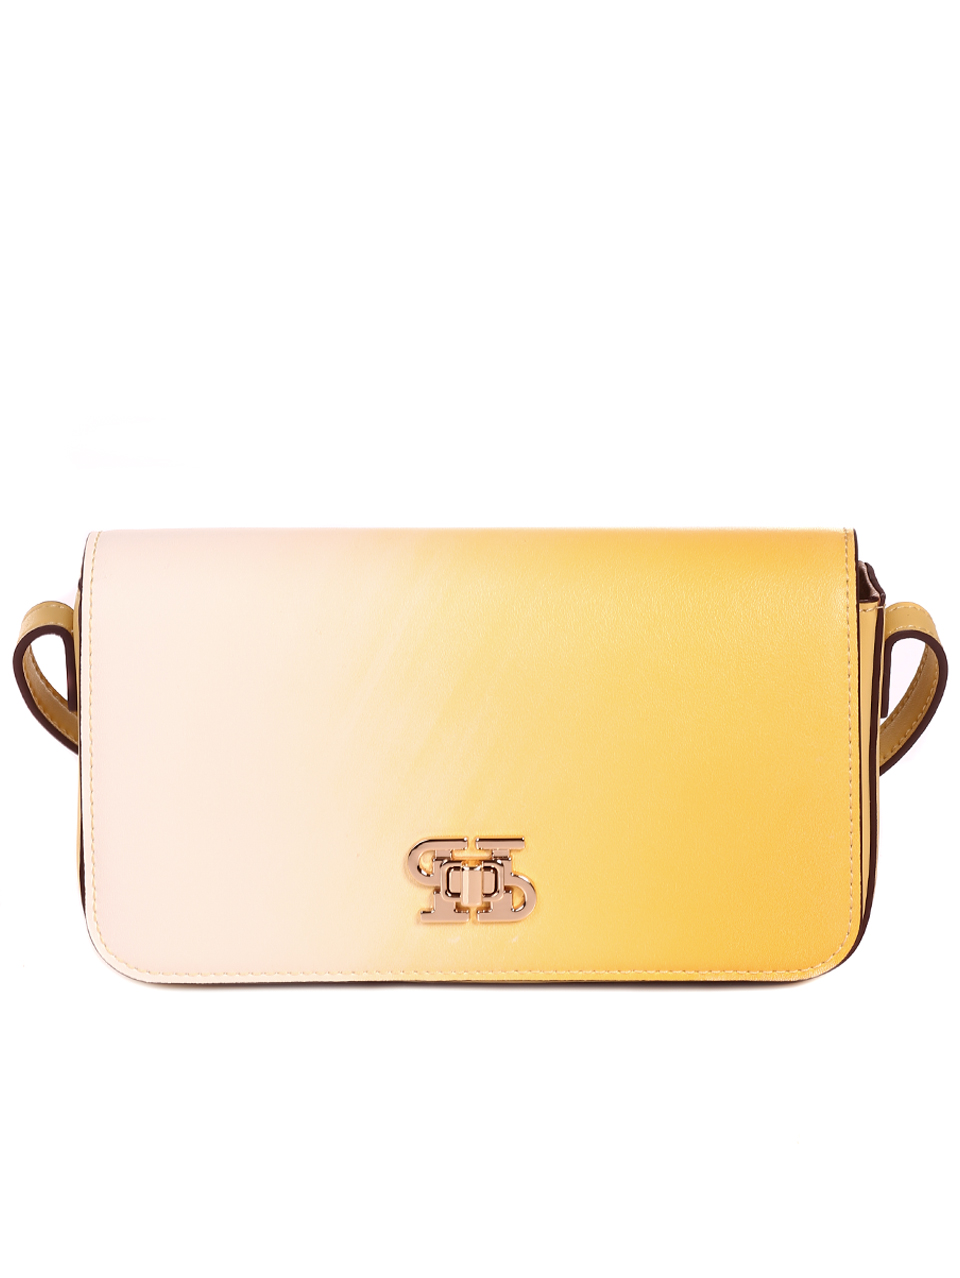 Елегантна дамска чанта в жълто от естествена кожа P20989 yellow